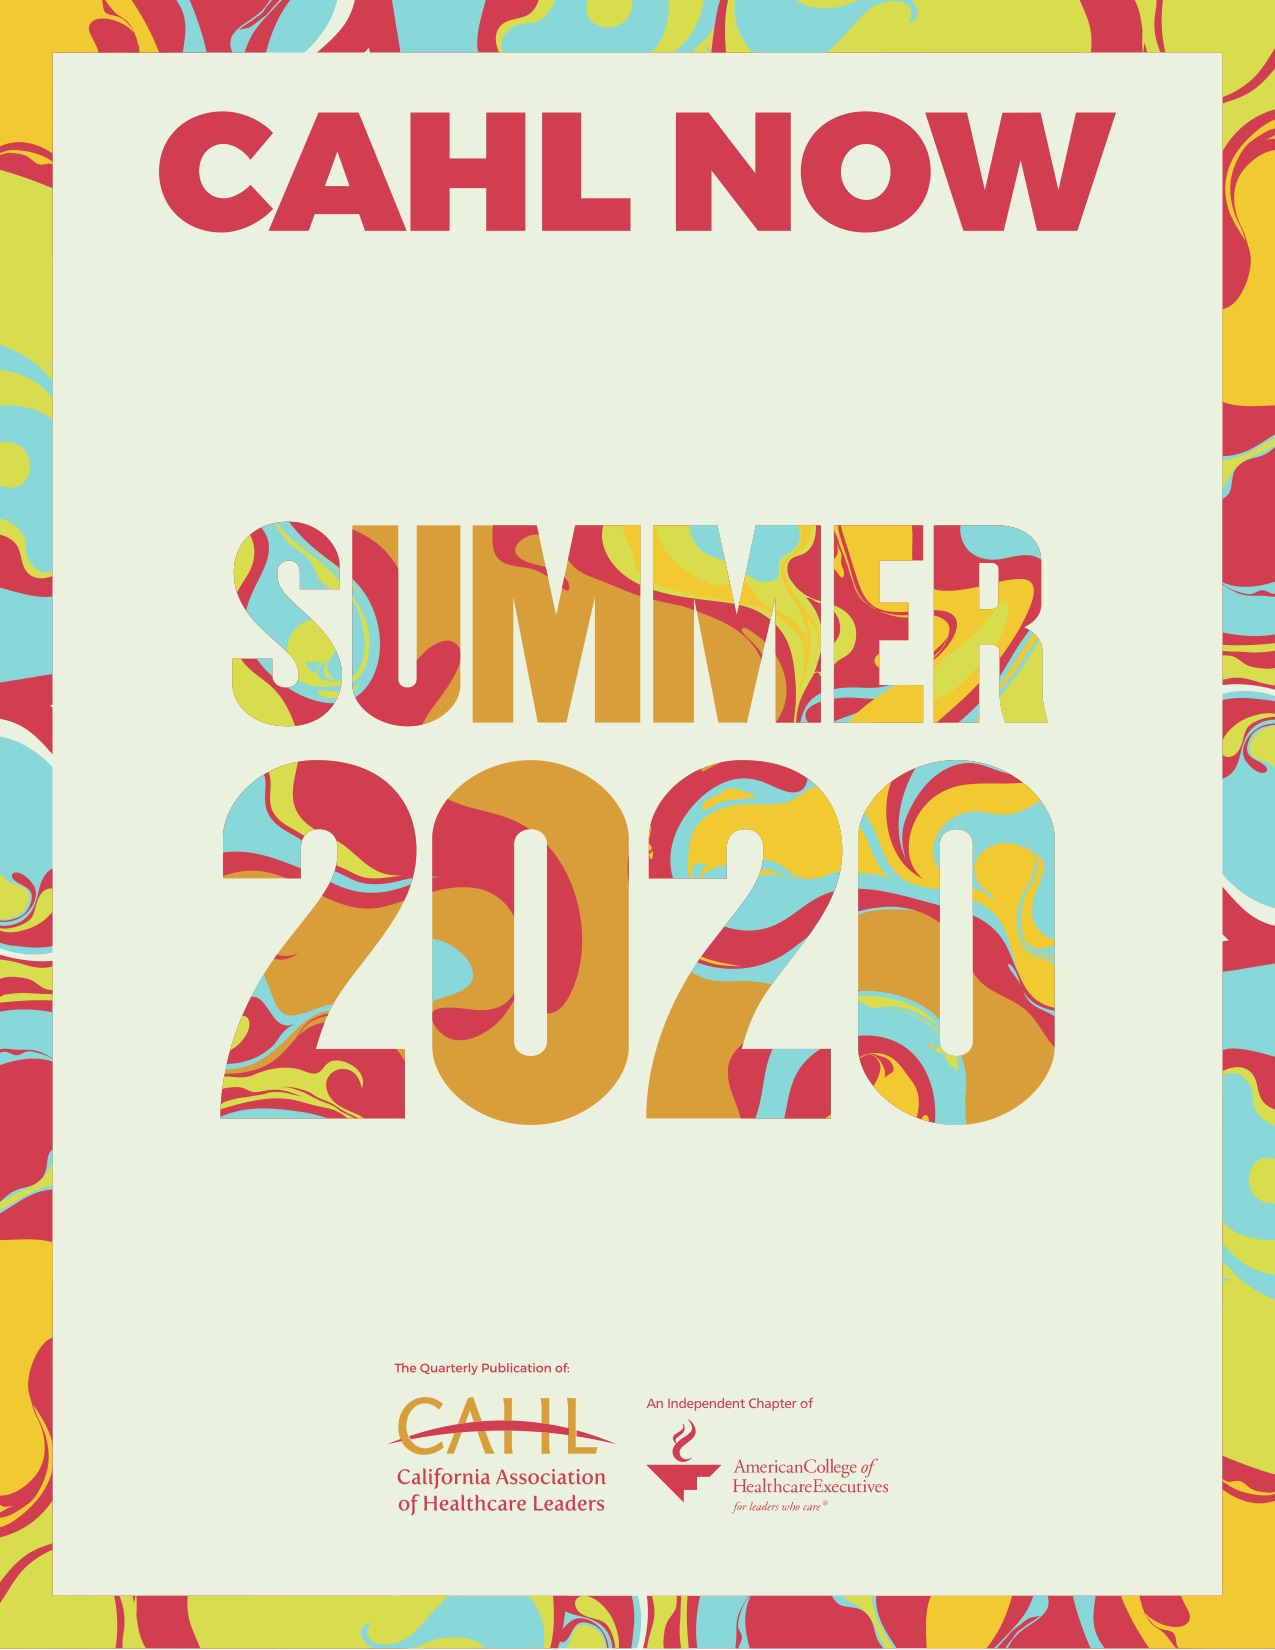 Summer 2020 Newsletter